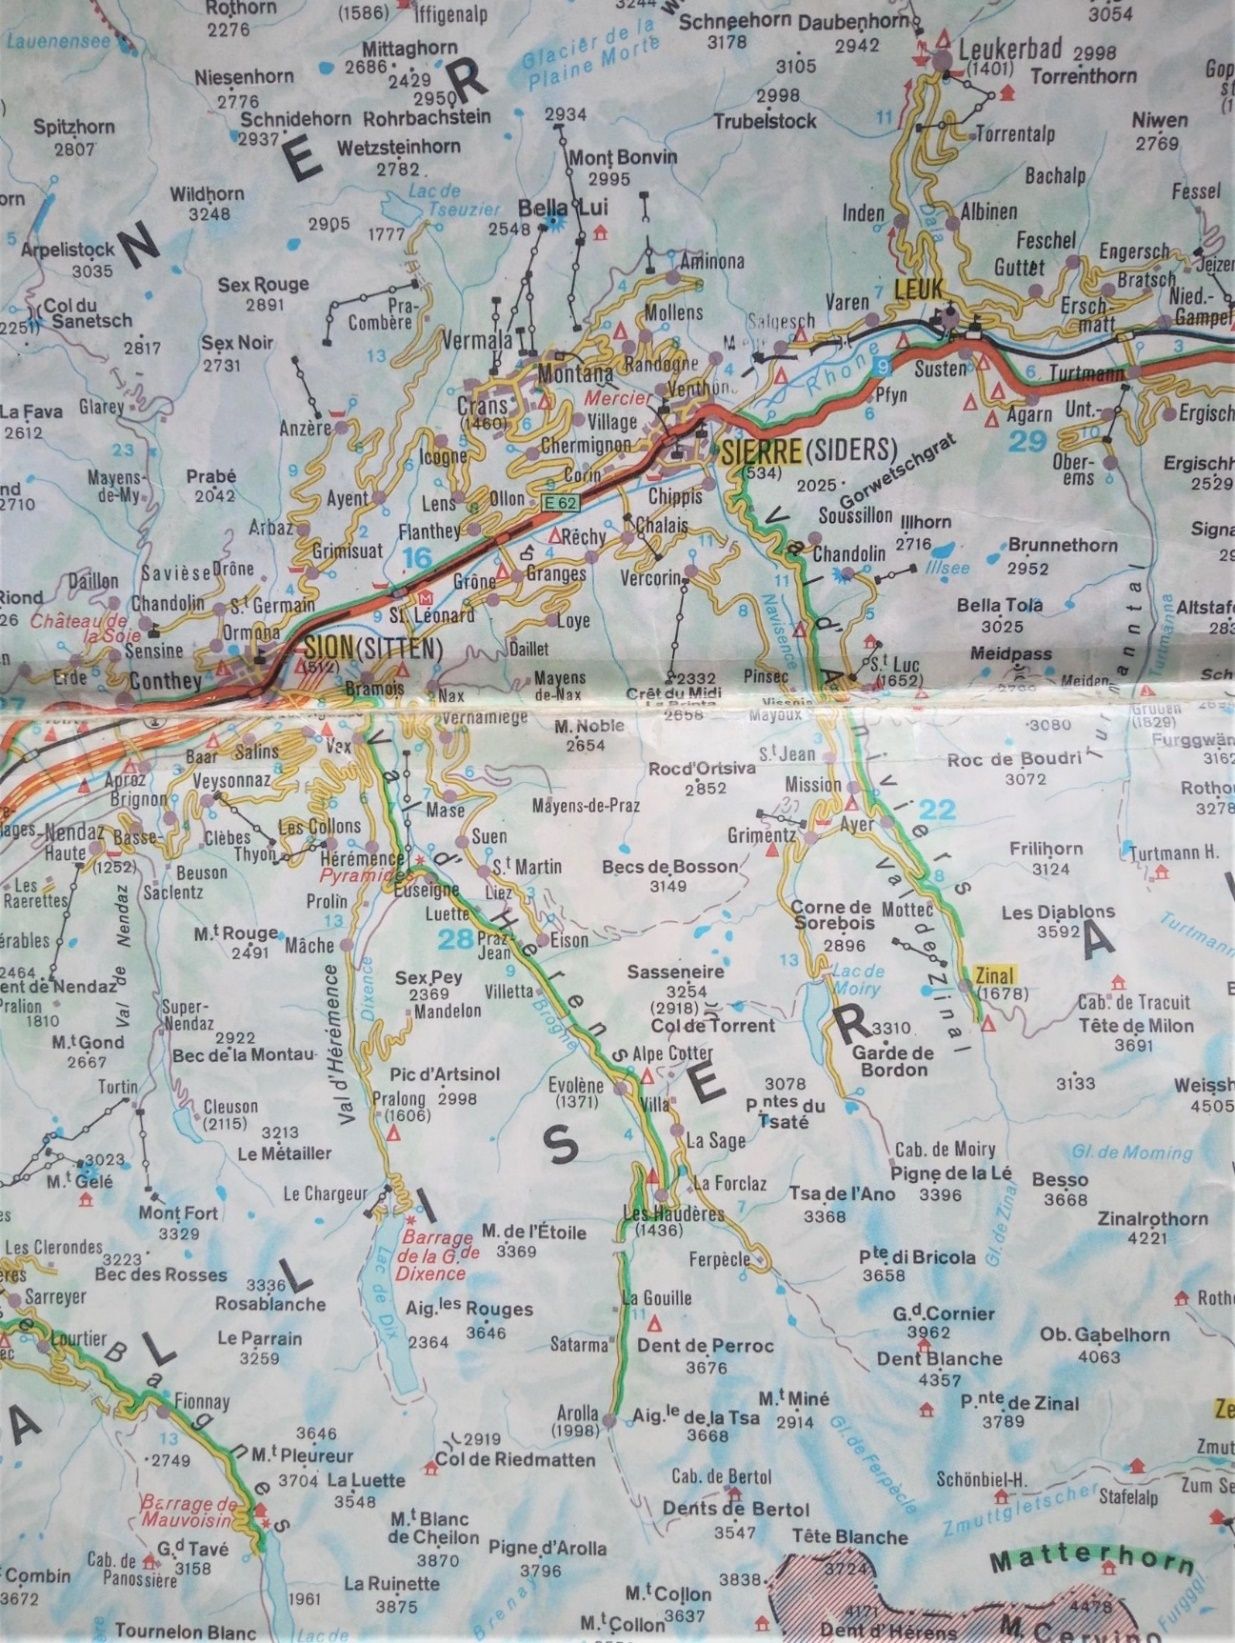 Para que os situéis, os adjunto un detalle del mapa de carreteras del Valais, la zona de Crans es la de encima de Sierre hasta el Glacier de Plaine Morte